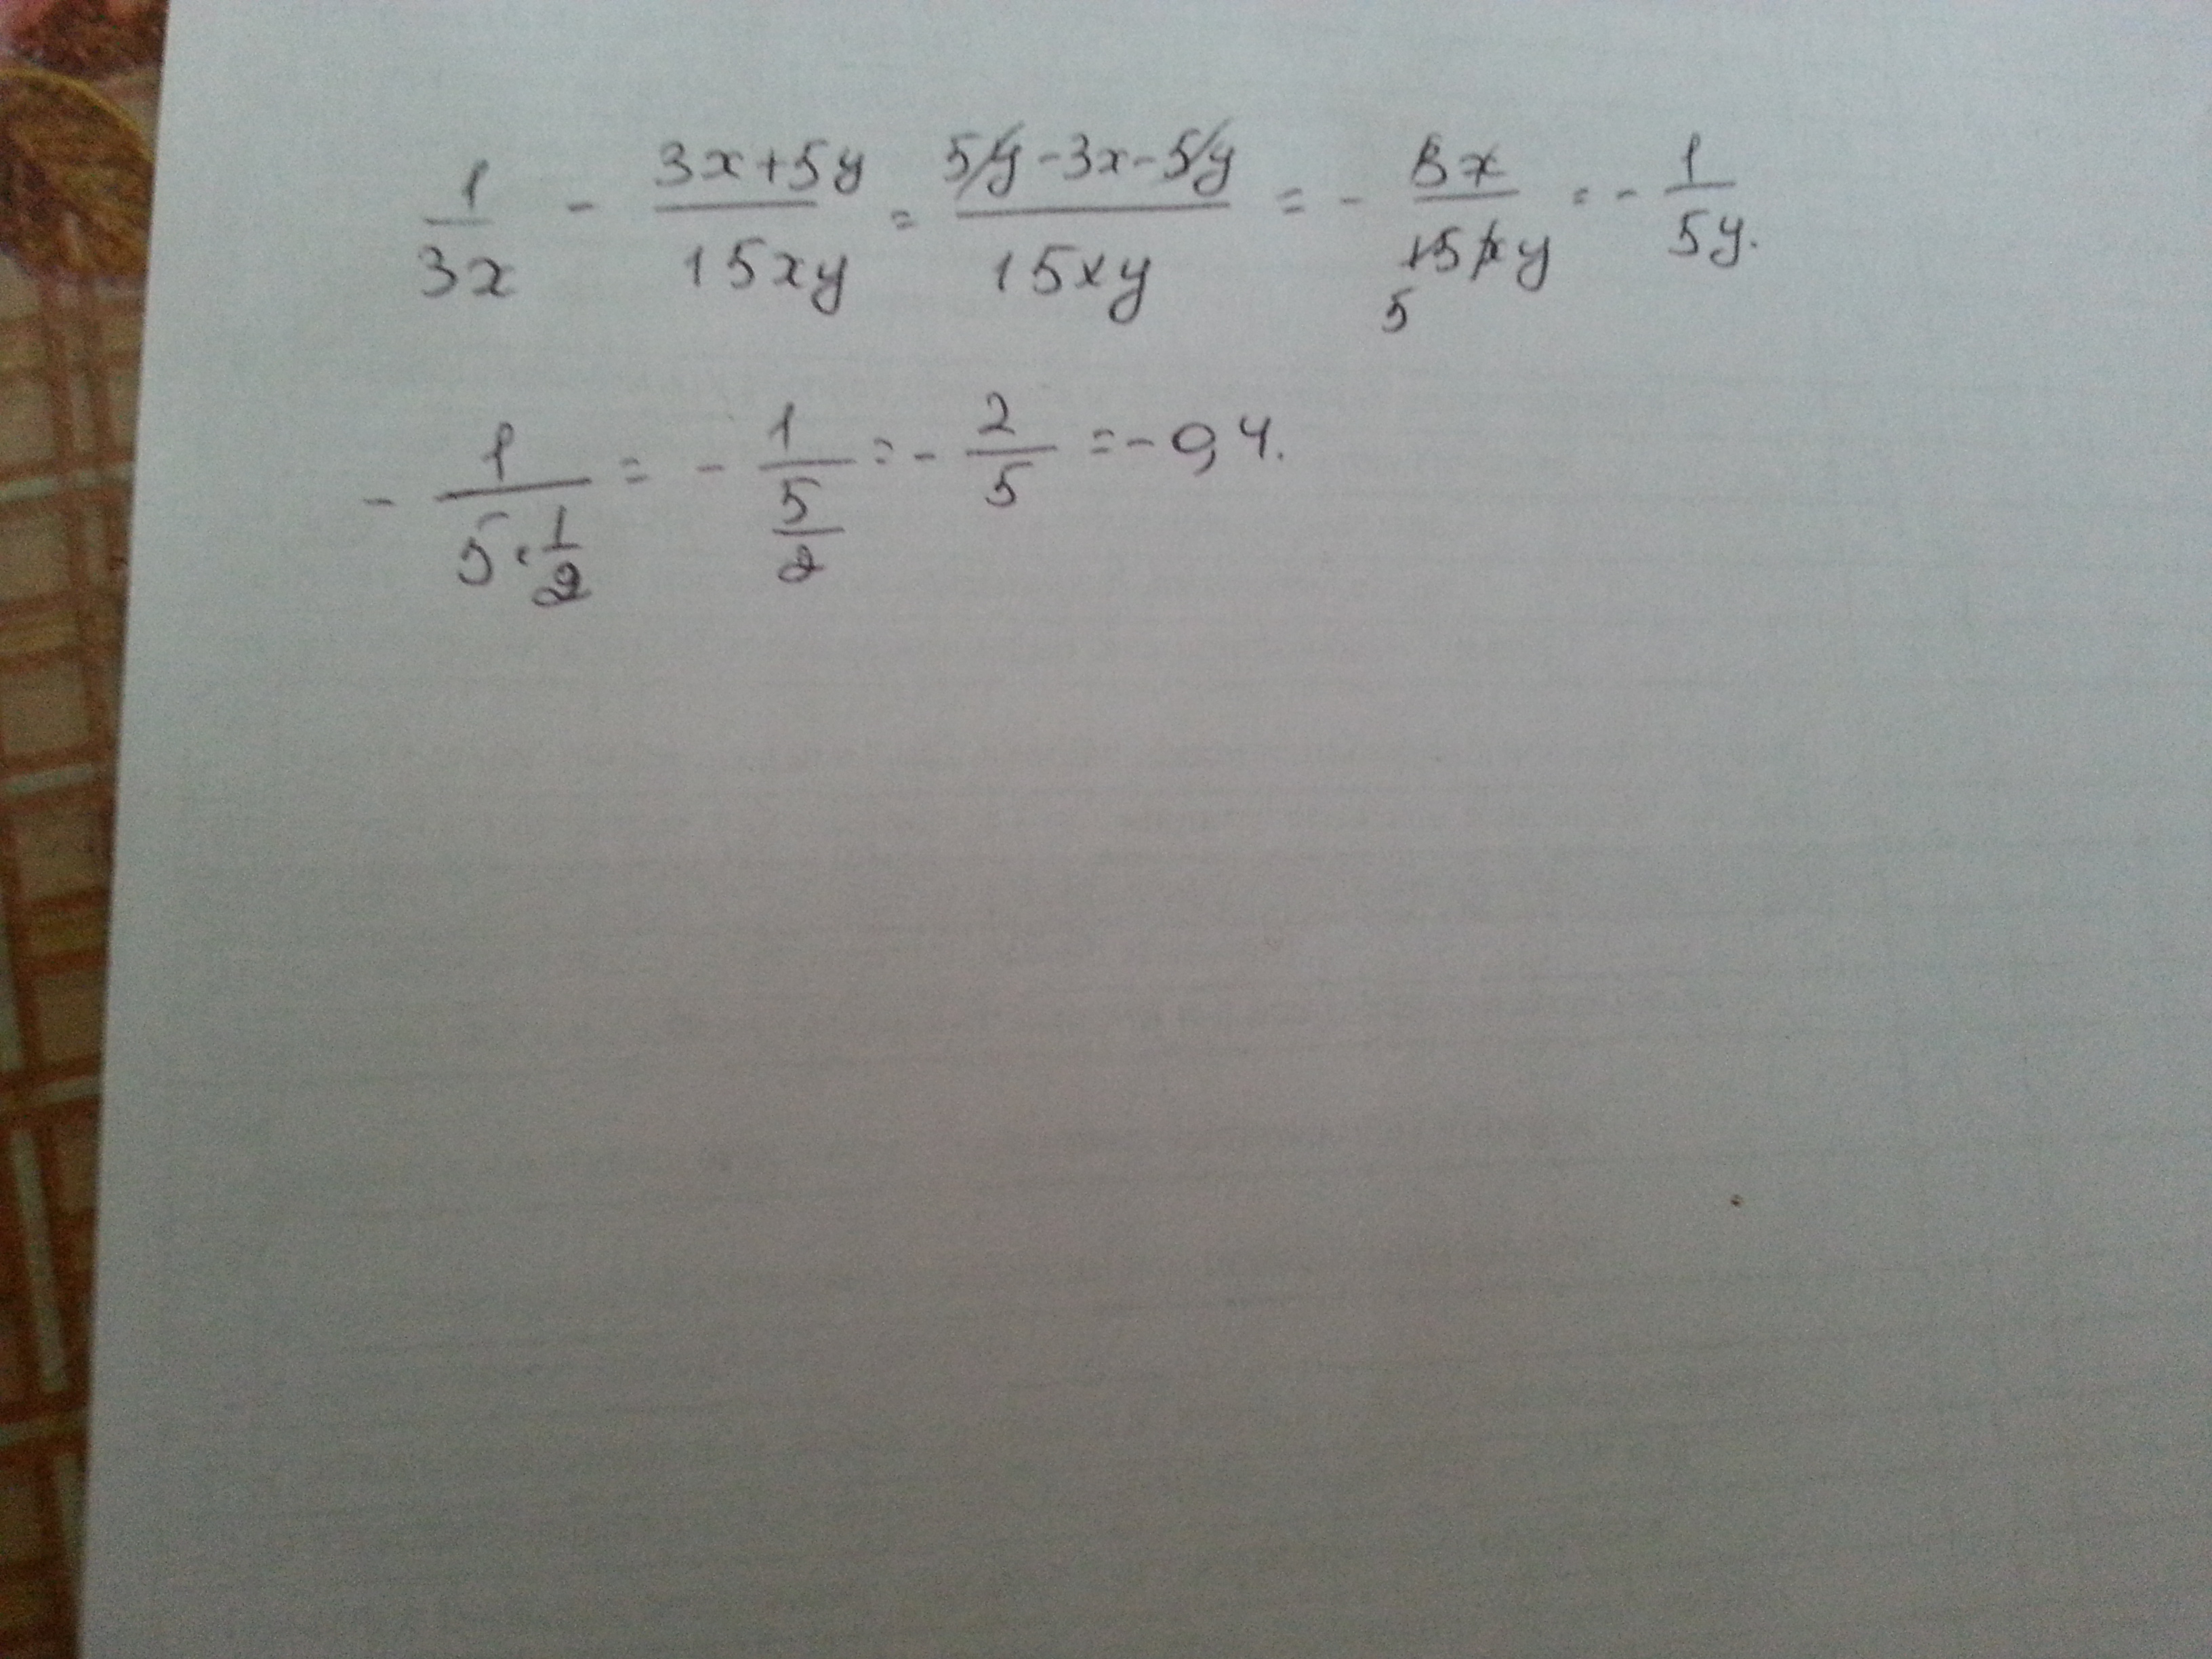 9 3x 45 15x 5 3. 1/3x-3x+5y/15xy при x корень из 45 y 1/2. Найдите значение выражения | минус 4| плюс |1 минус 3x| при x=2,4.. 1/3x 3x+5y/15xy. 1 3 5 3 15x y x XY + − при x = 45 , 12 y = ..